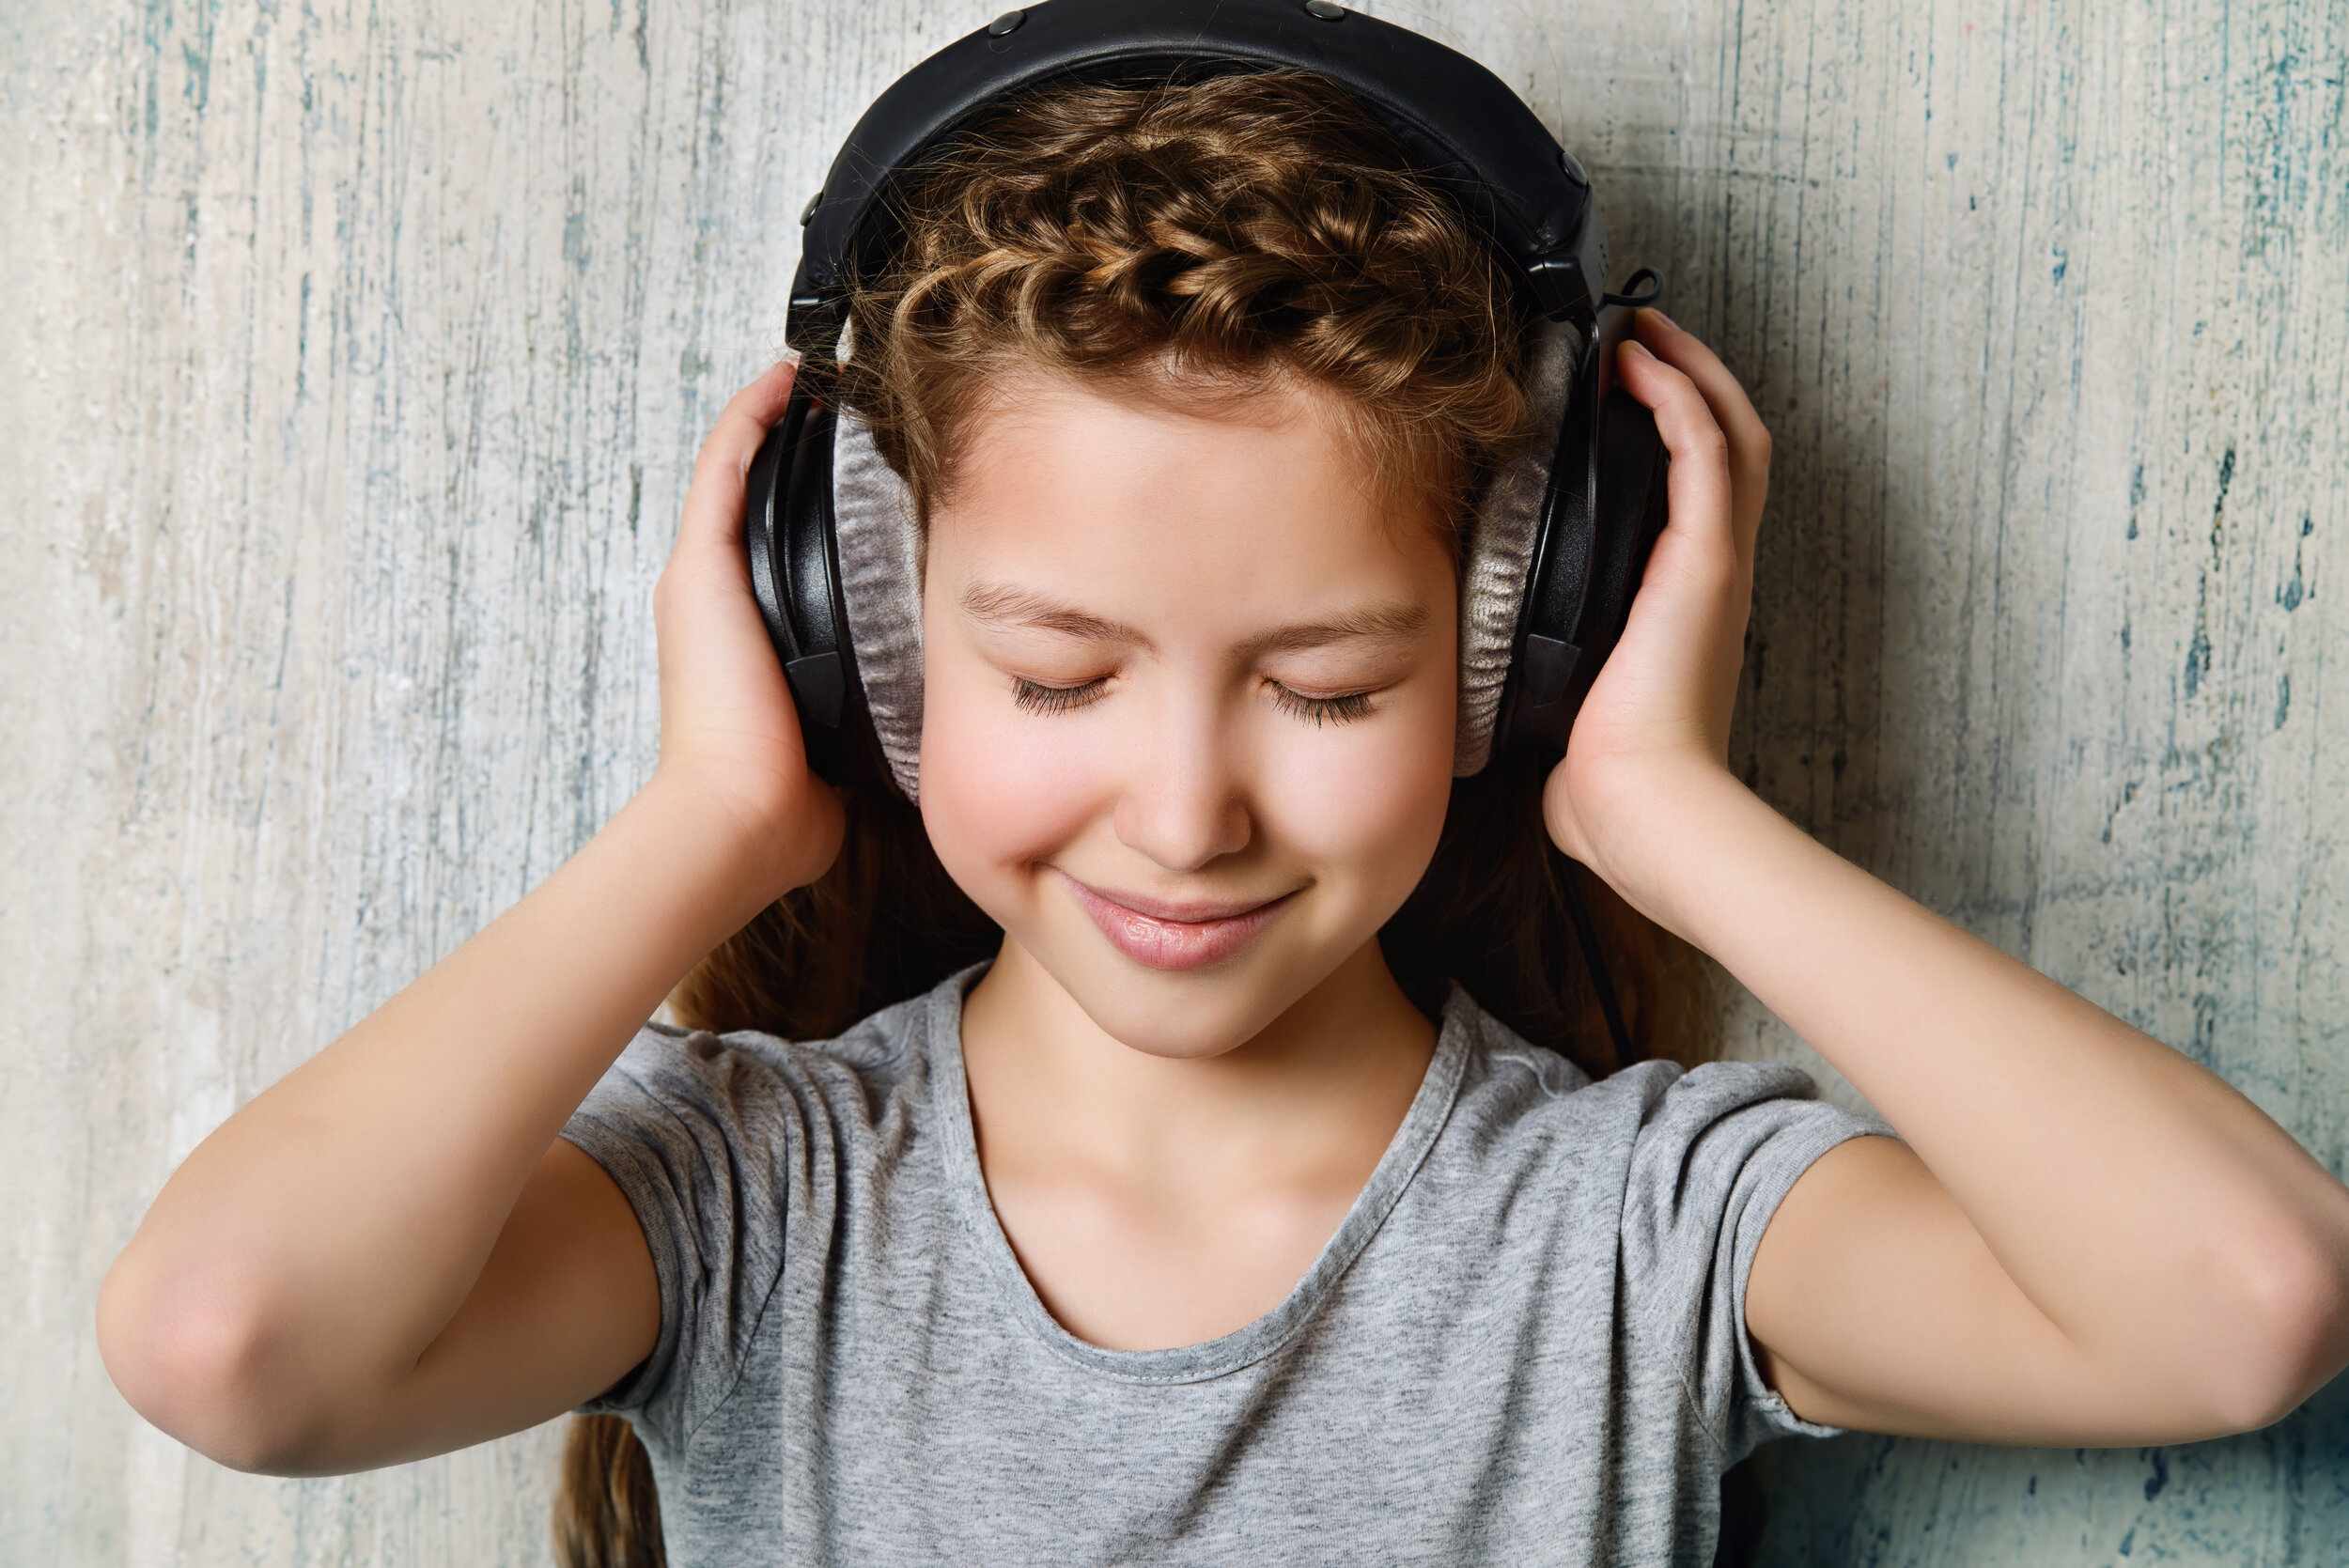 1 they listen to music now. Музыка для детей. Наушники с музыкой для детей. To listen to Music. Children listen to Music.